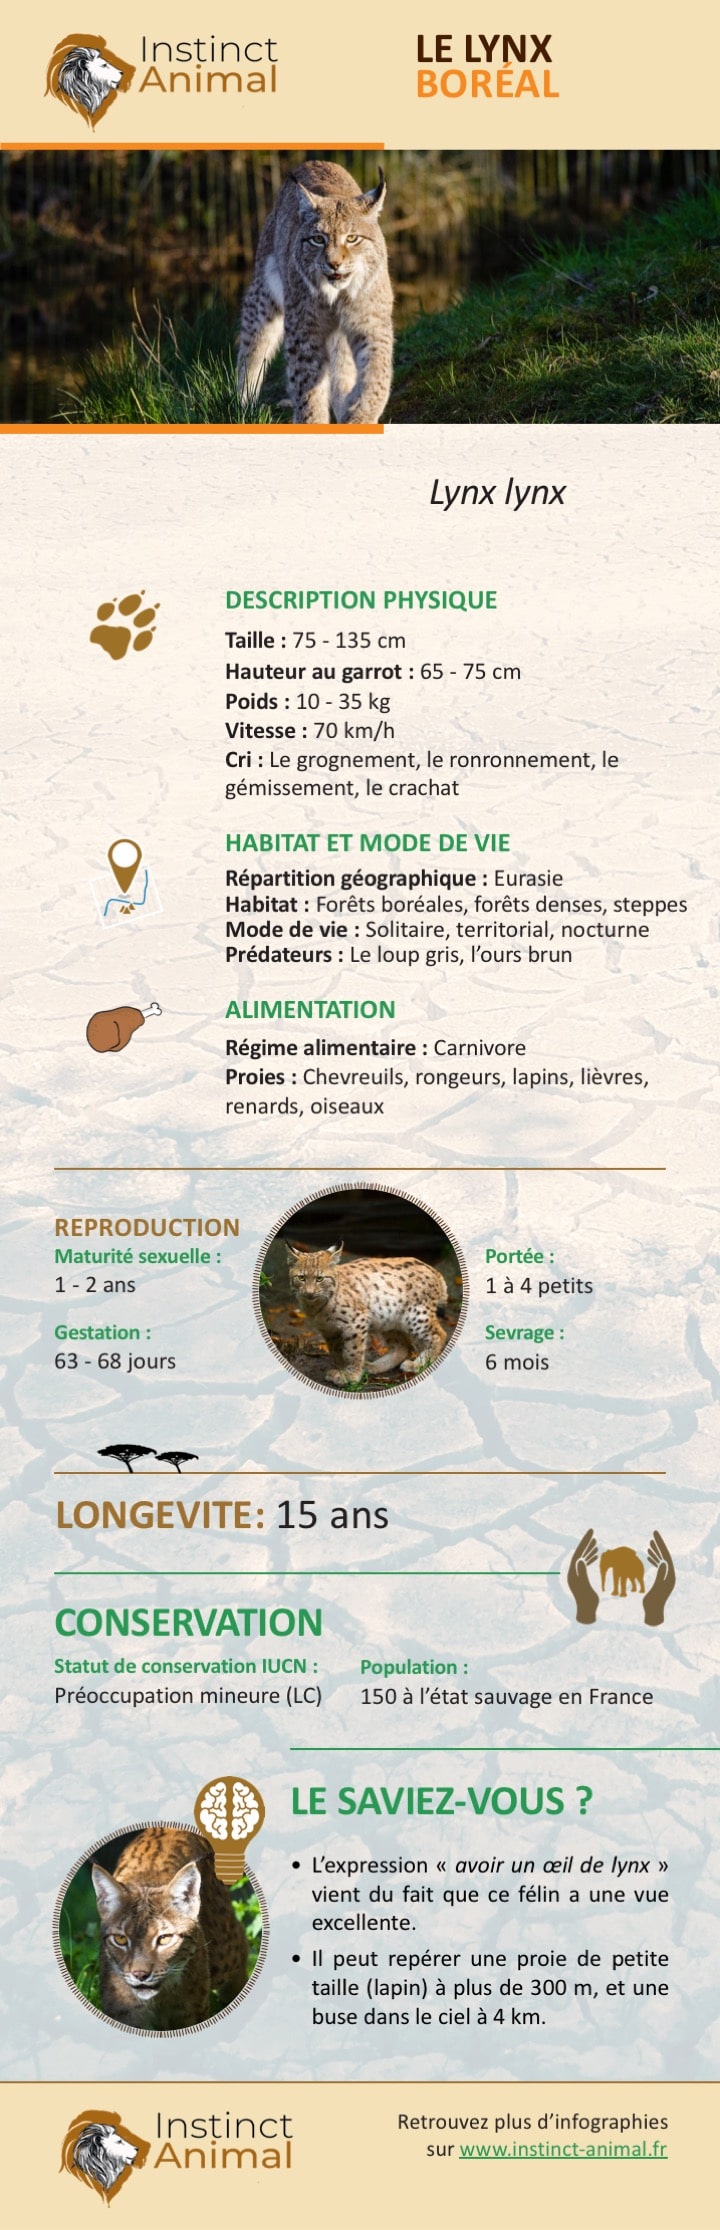 Description du lynx boréal - Infographie - Instinct Animal